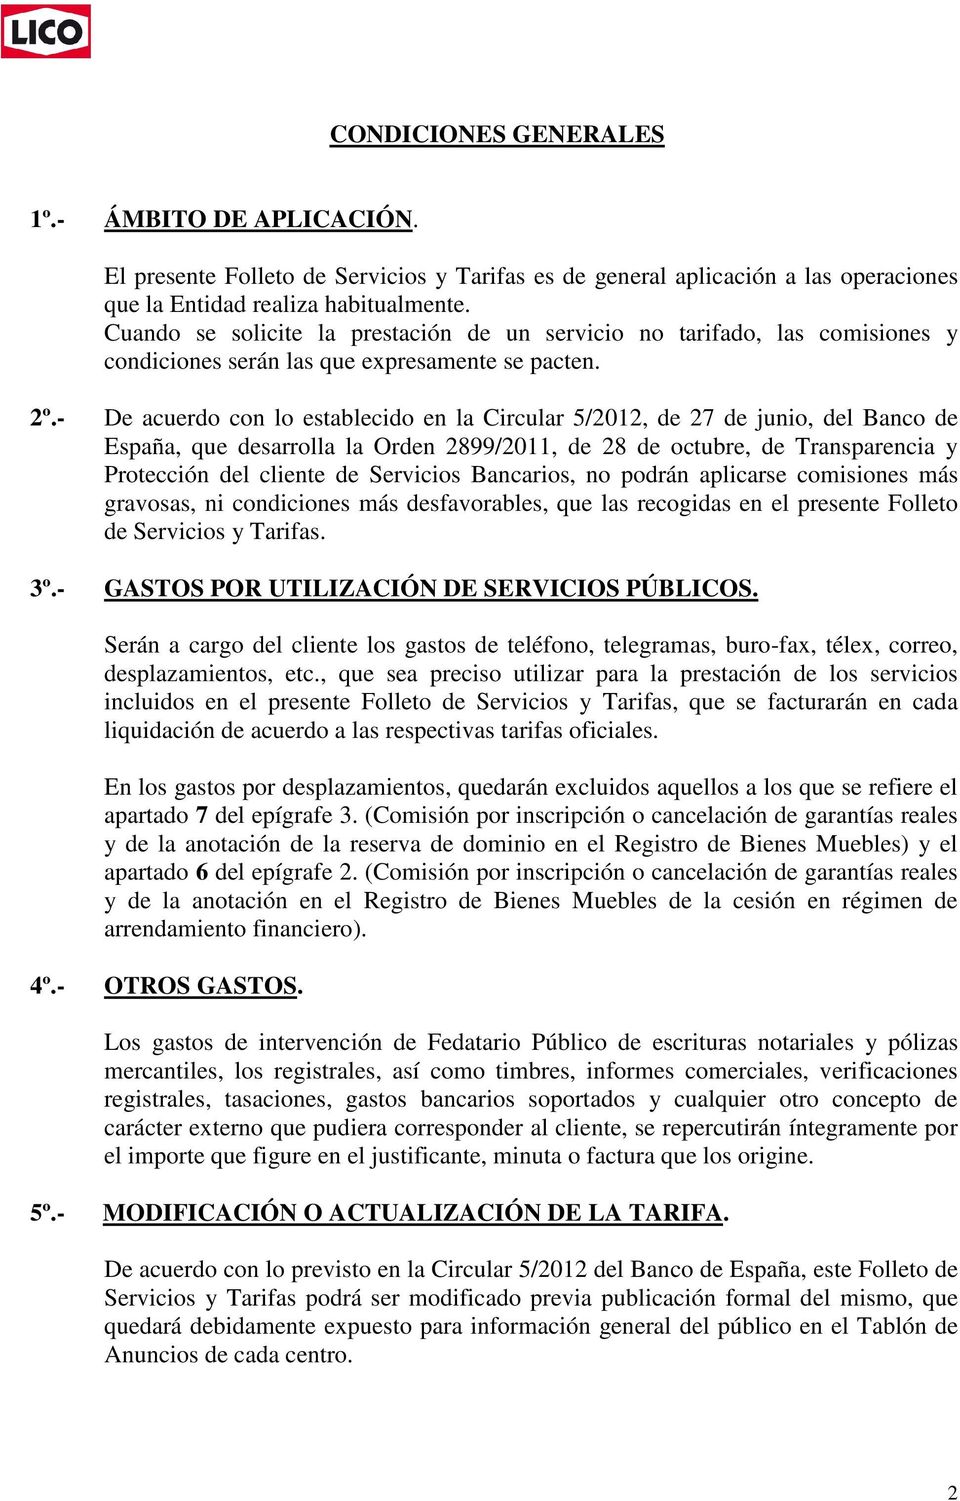 - De acuerdo con lo establecido en la Circular 5/2012, de 27 de junio, del Banco de España, que desarrolla la Orden 2899/2011, de 28 de octubre, de Transparencia y Protección del cliente de Servicios